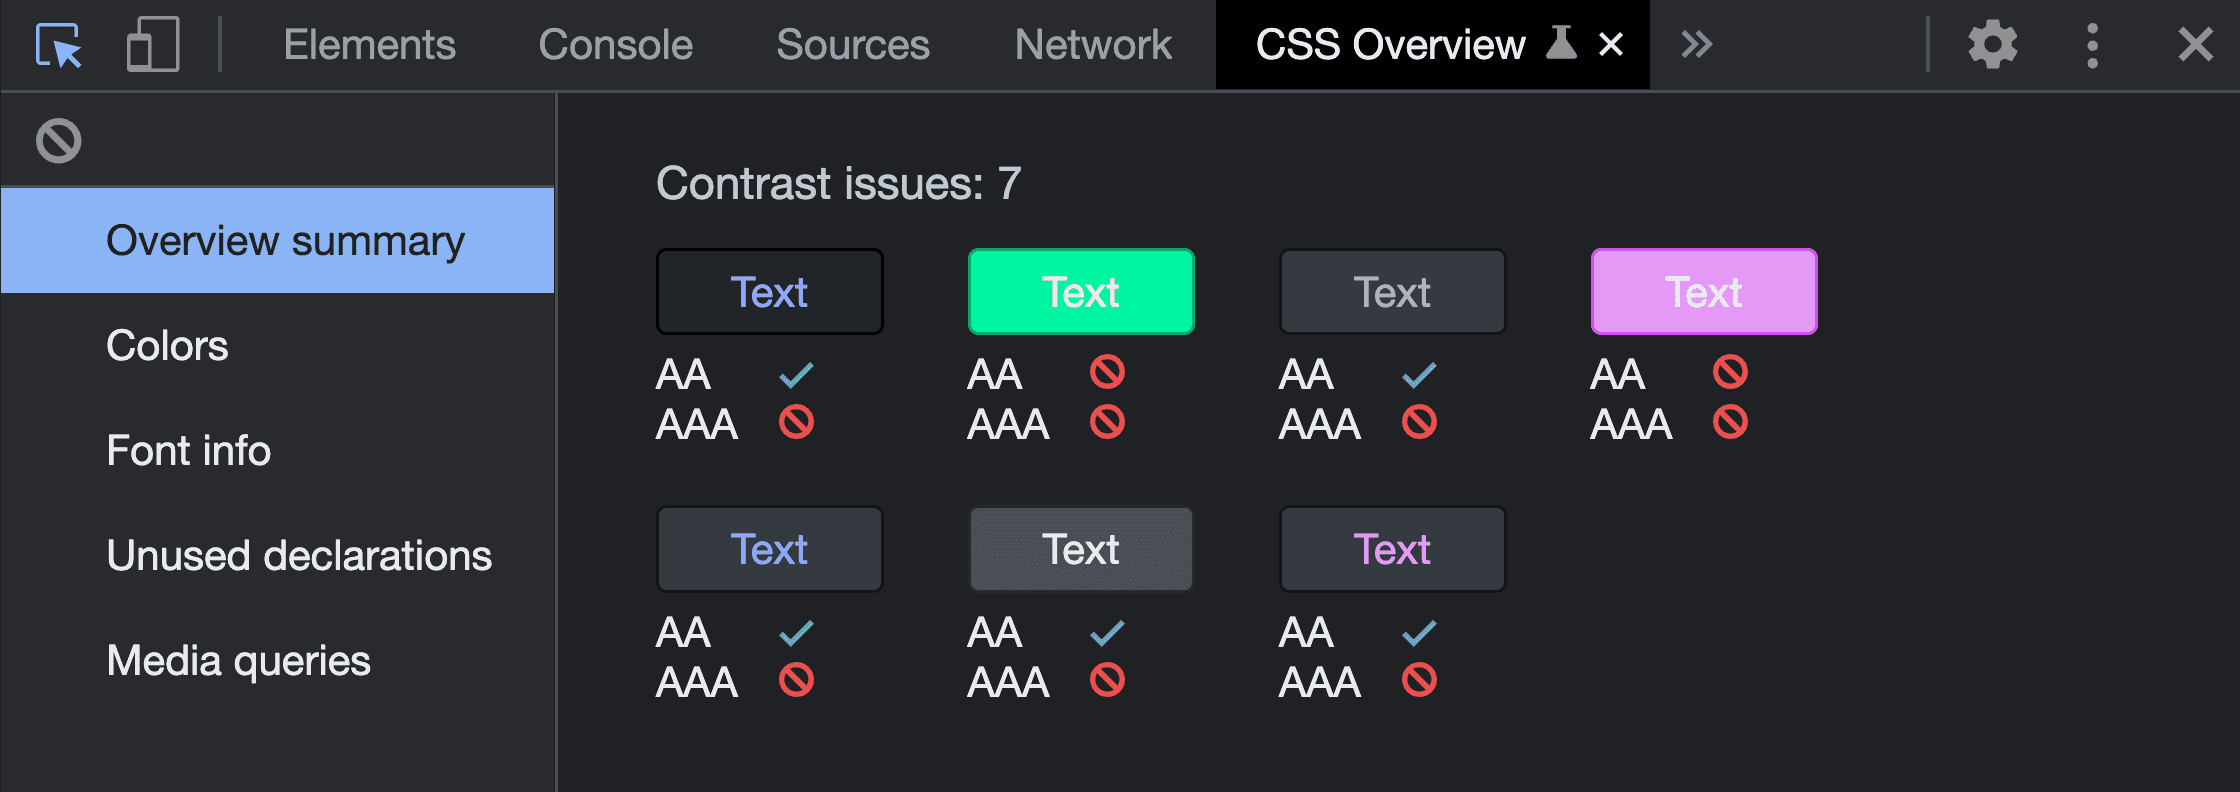 CSS の [Overview] キャプチャ ツールを実行した [Overview Summary] のスクリーンショット。コントラストの問題が 7 つあり、検出された色の組み合わせと失敗した結果が示されています。